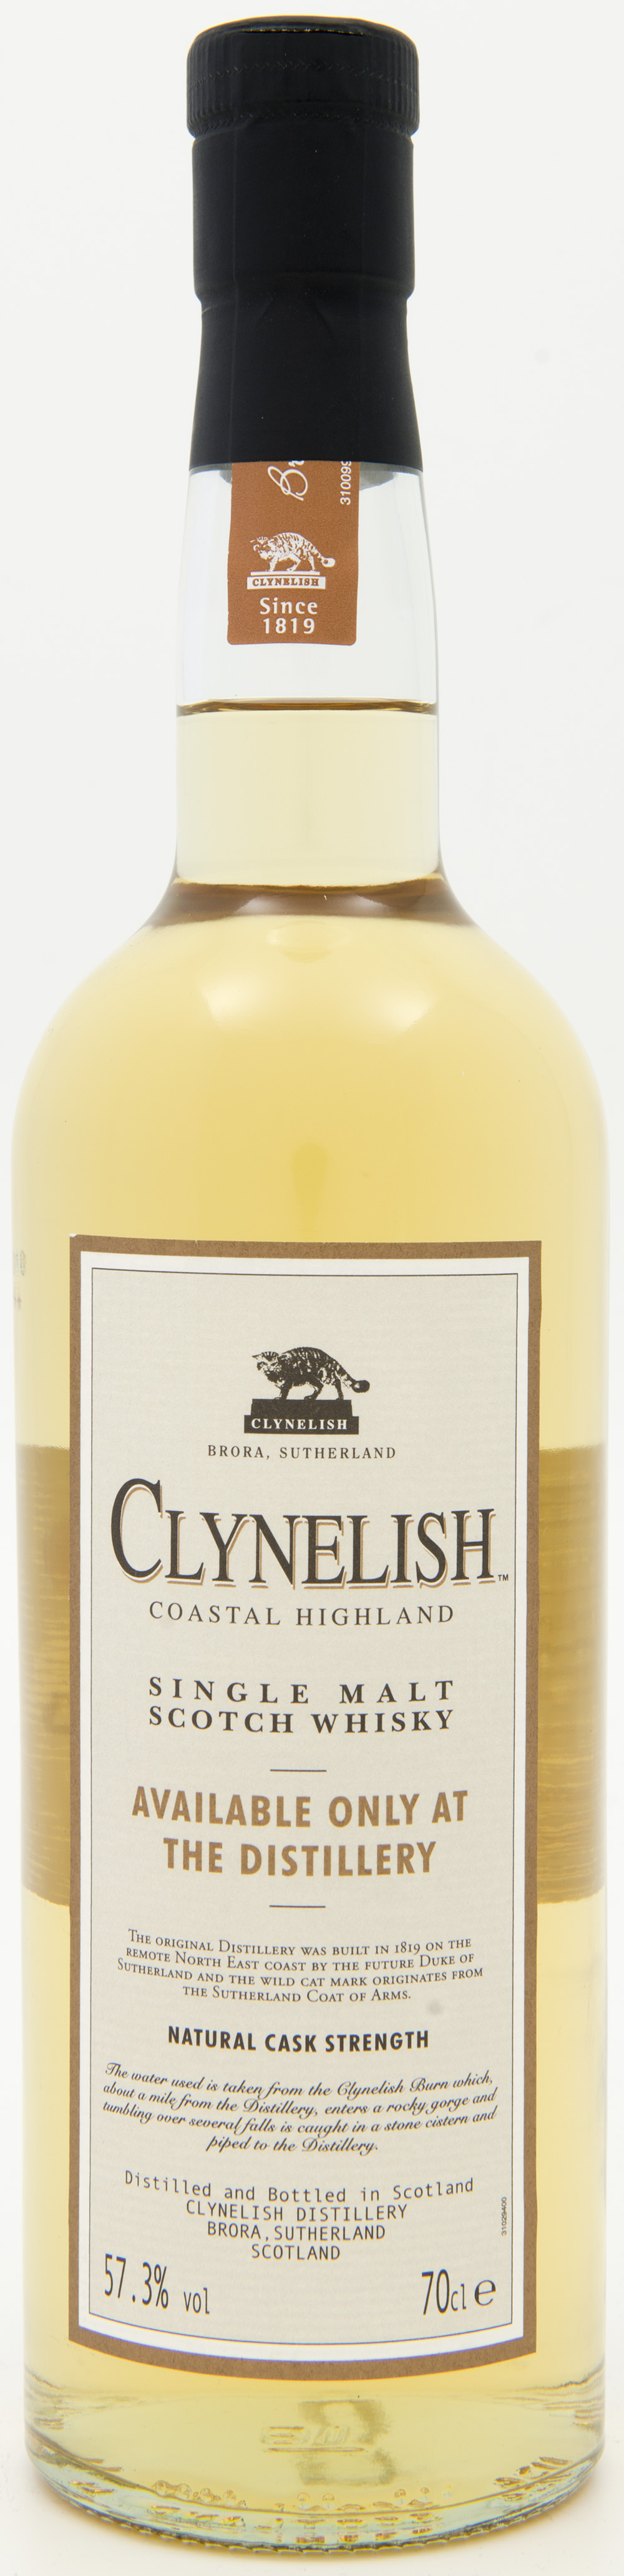 Billede: DSC_8227 - Clynelish - availabale only at the destillery - bottle front.jpg